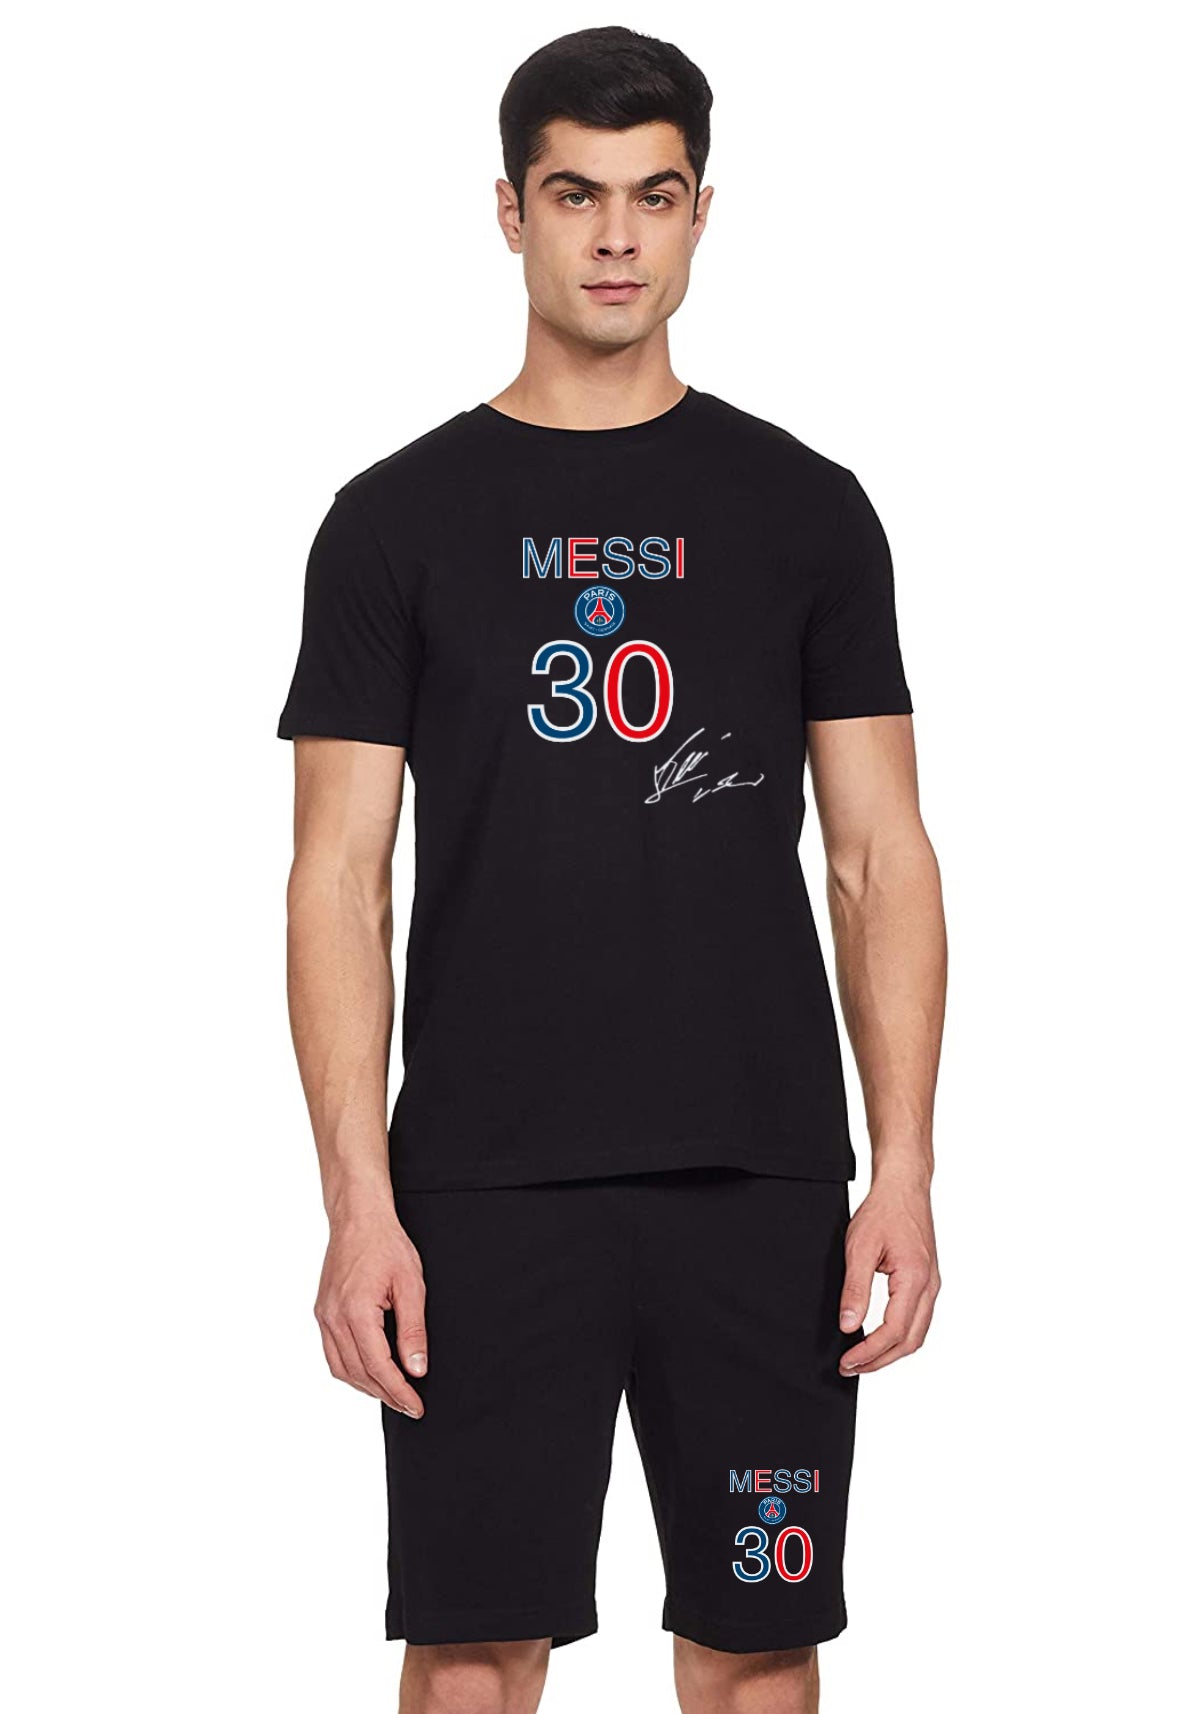 Messi No. 30 Tshirt and Shorts Co-ordinate set